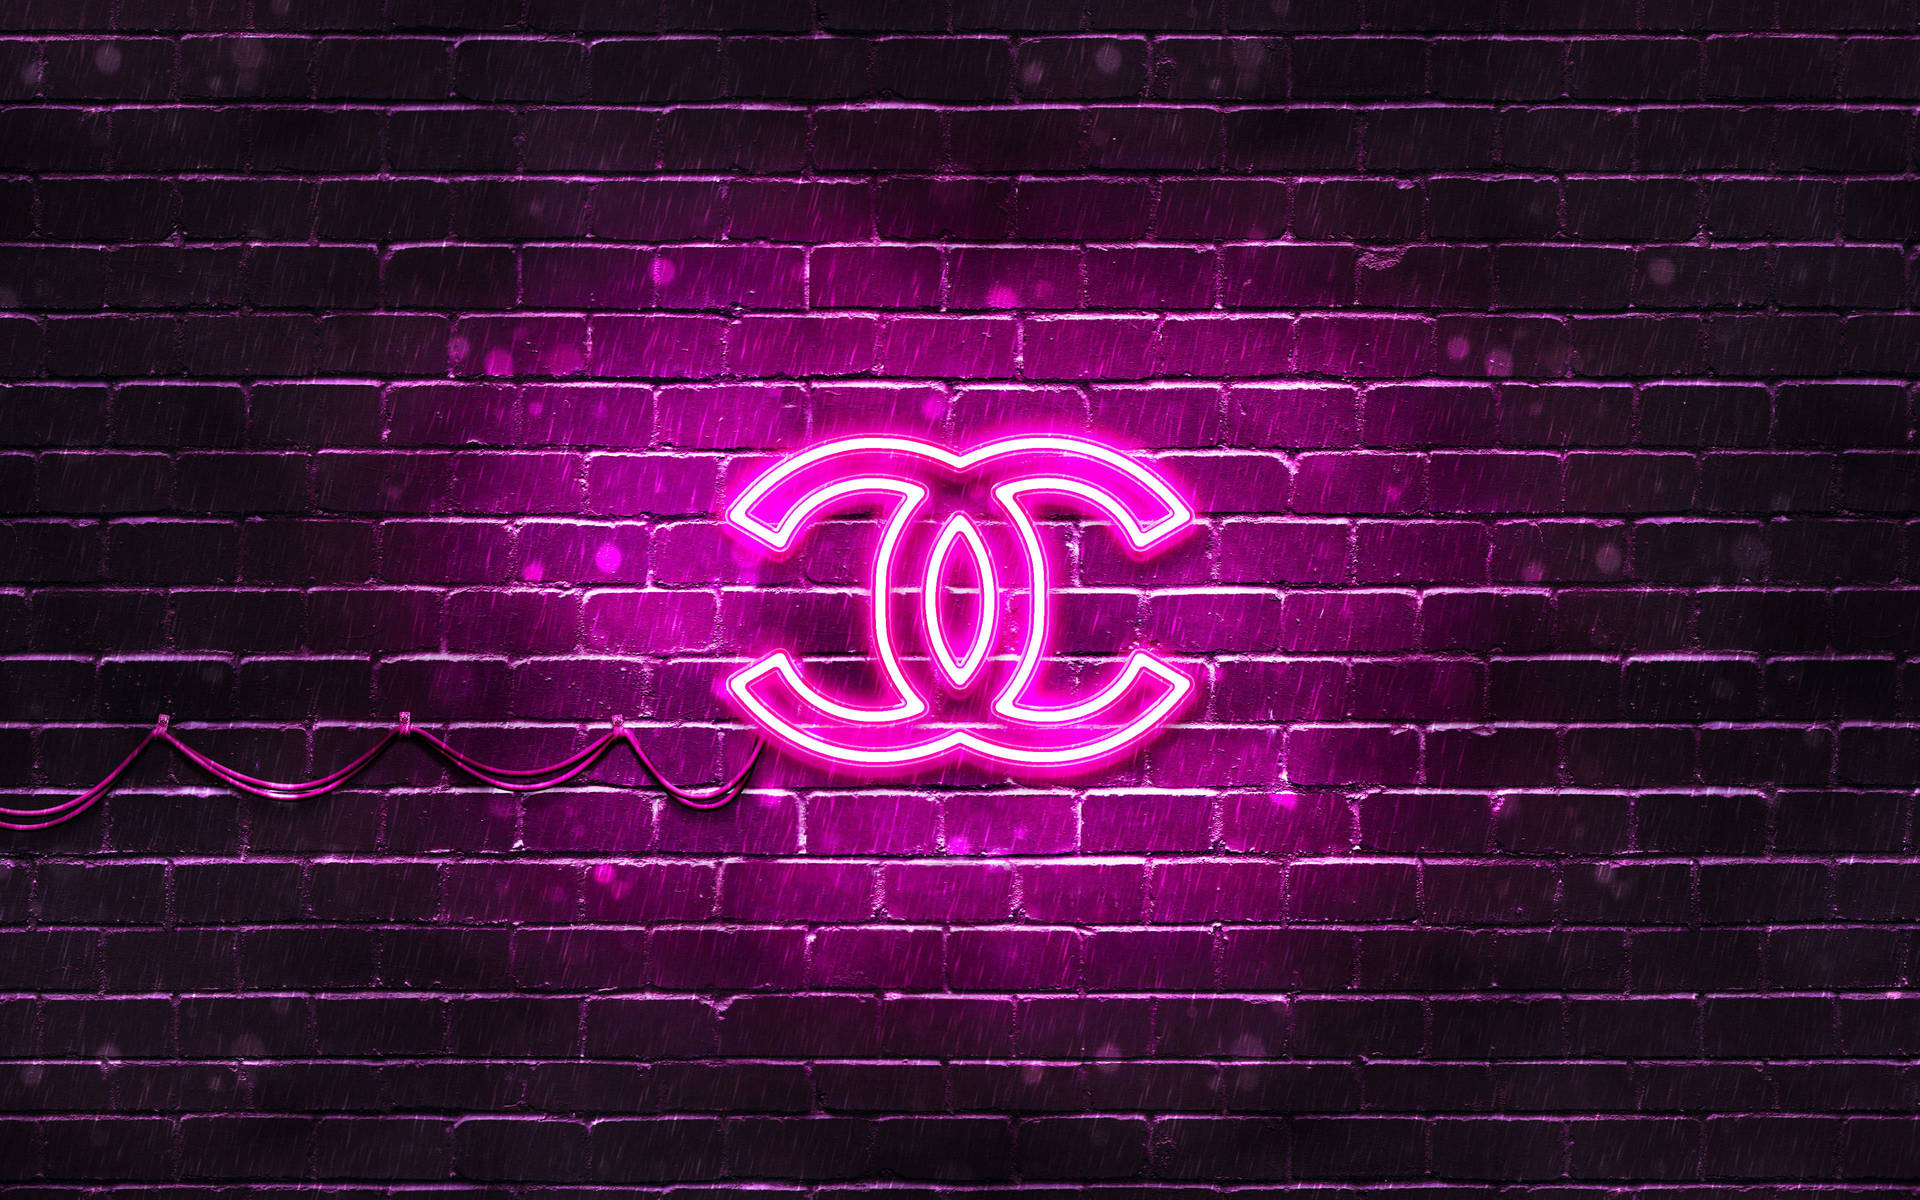 Ljustrosa Chanel-logotyp. Wallpaper